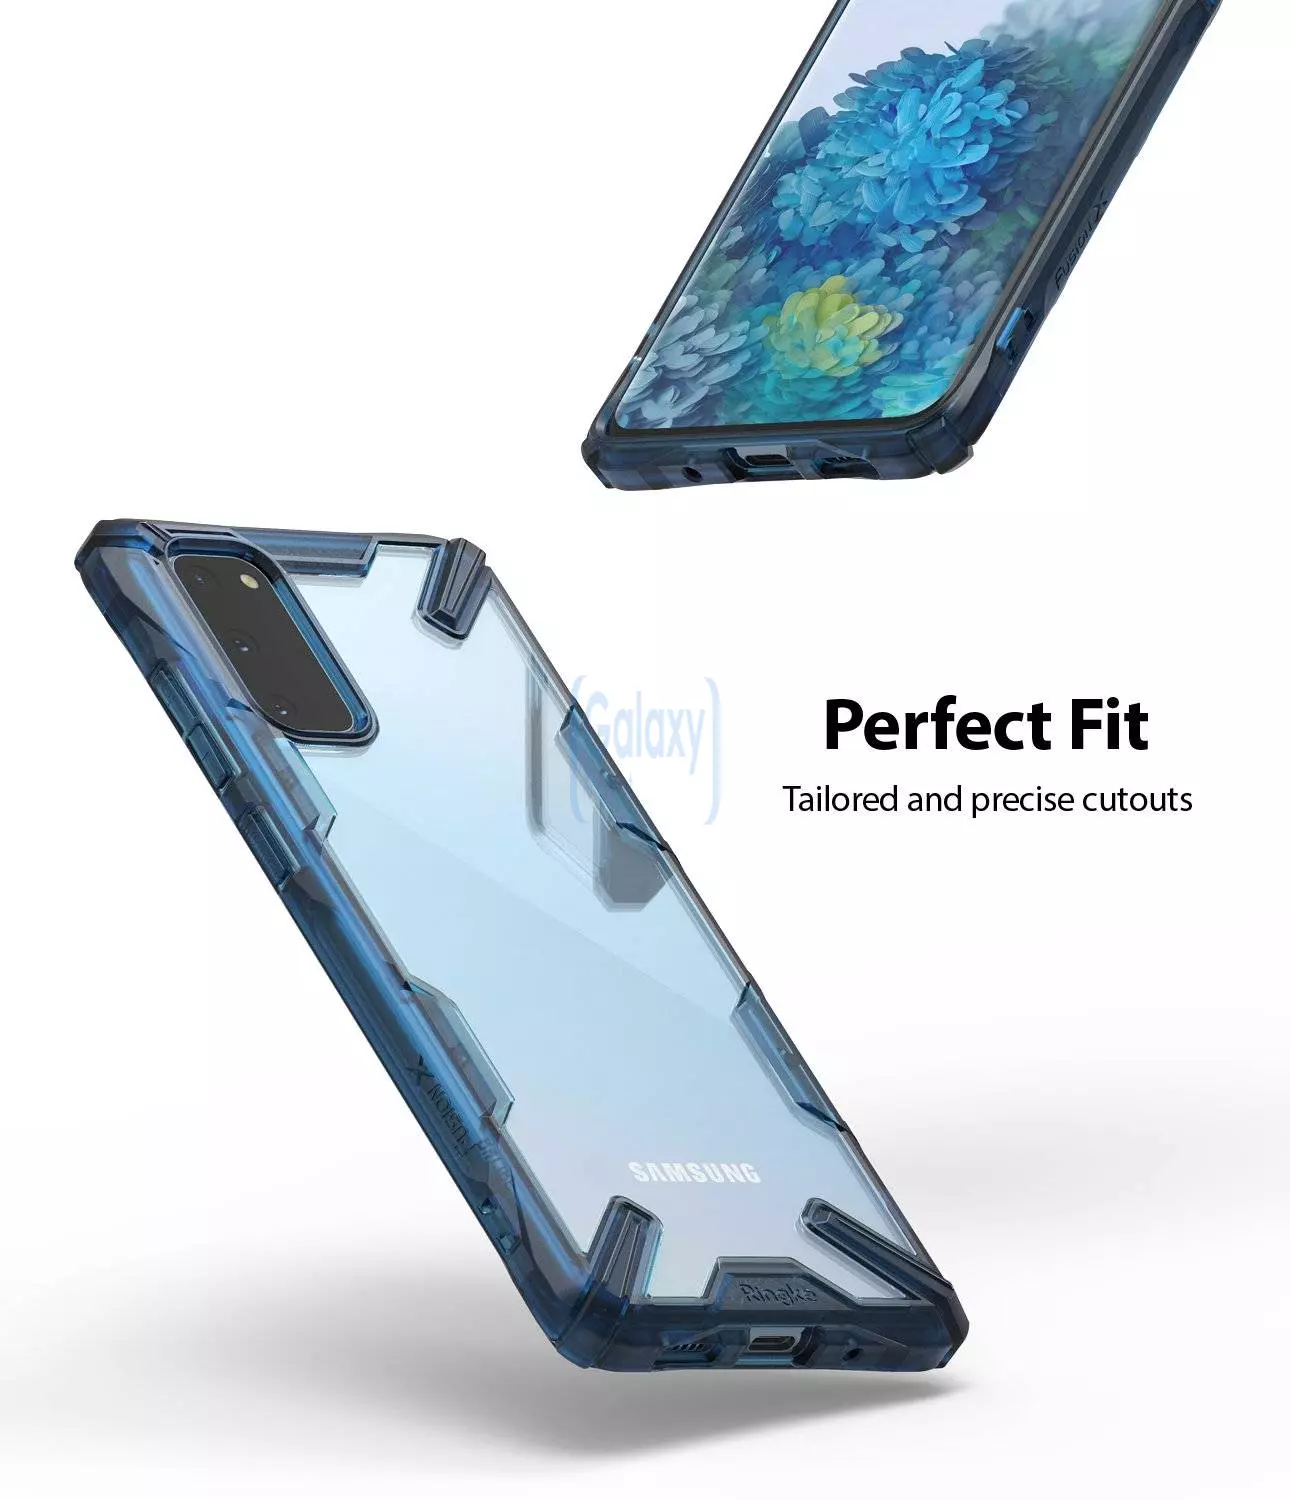 Чехол бампер Ringke Fusion-X Design для Samsung Galaxy S20 Camo Black (Камуфляж Черный)